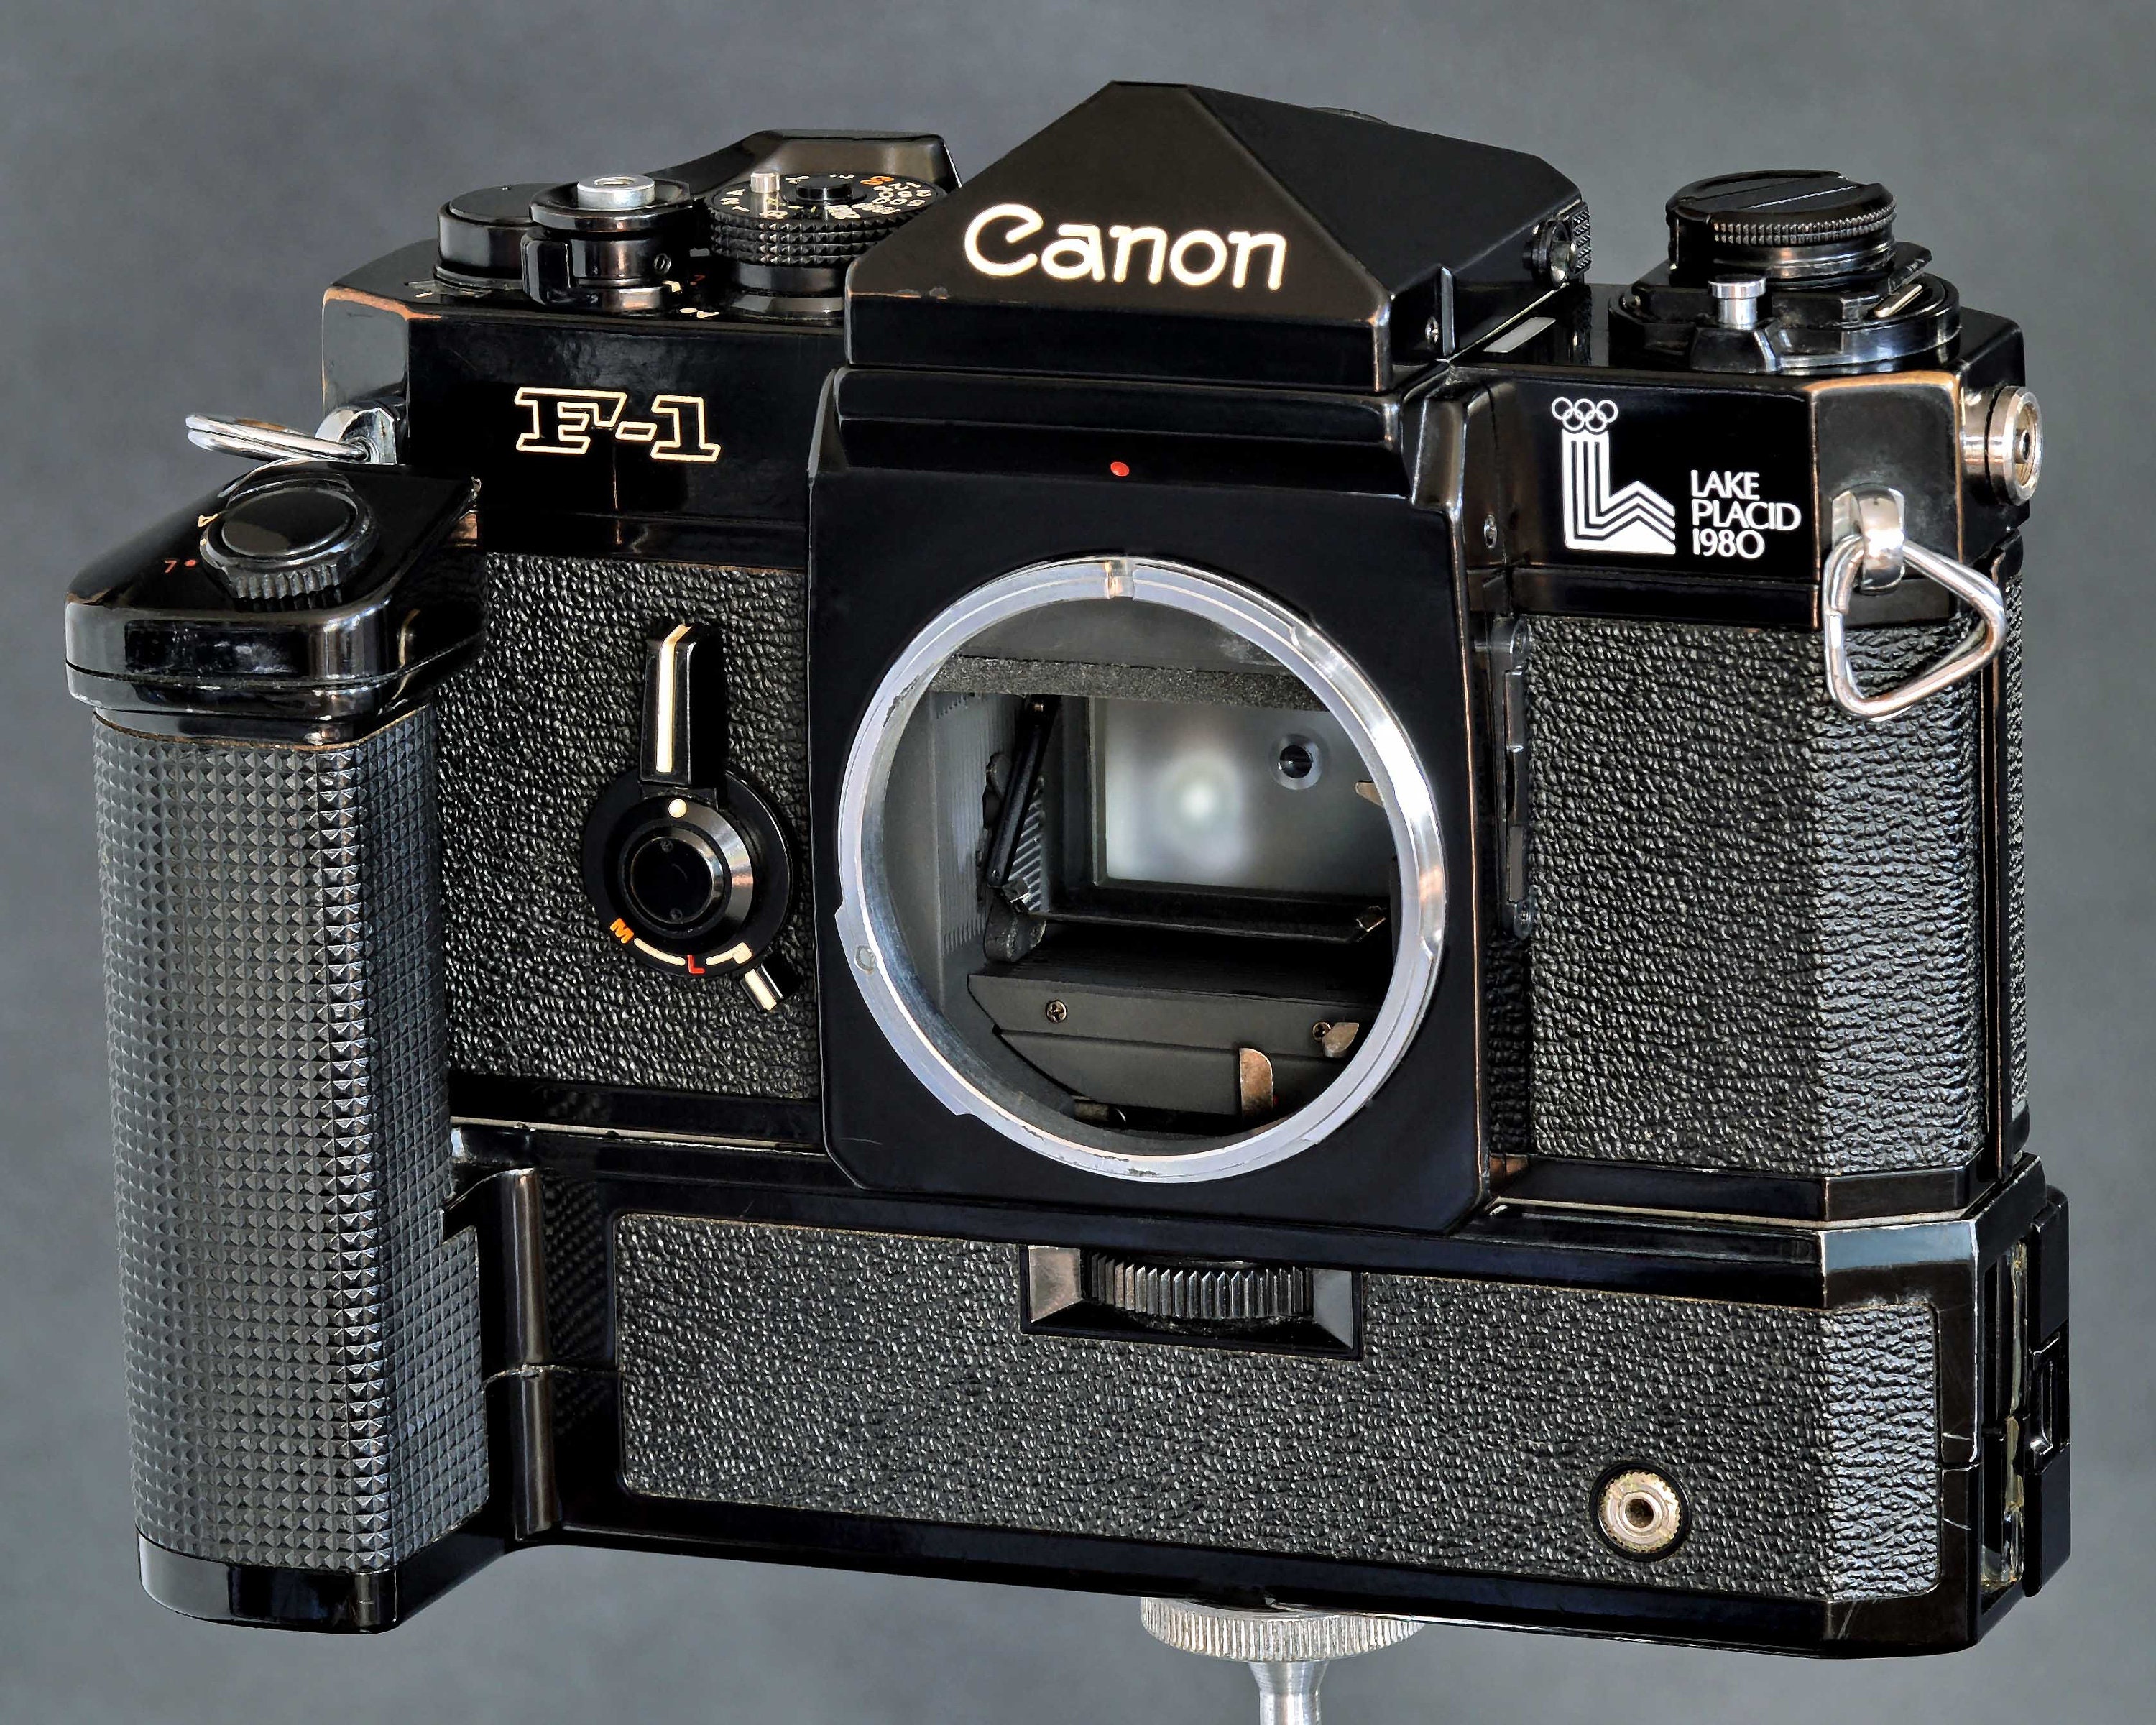 綺麗 Canon F-1 LAKE PLACID 1980 Olympic - フィルムカメラ